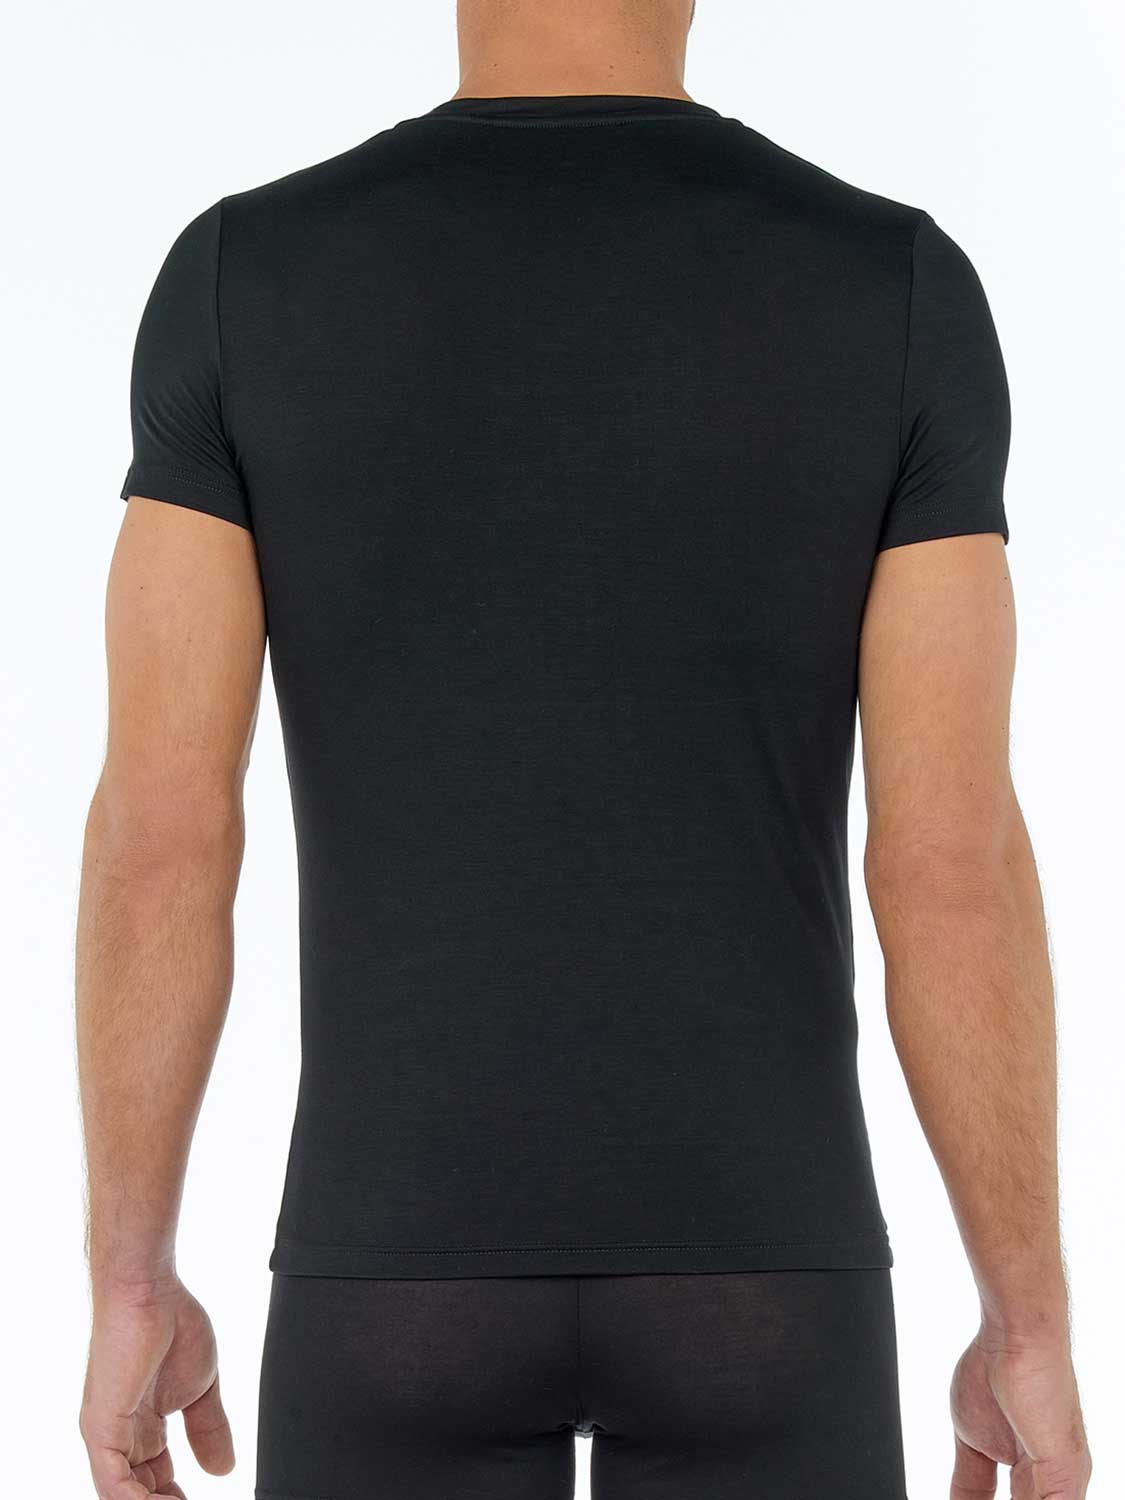 T-Shirt V-neck - Tencel Soft